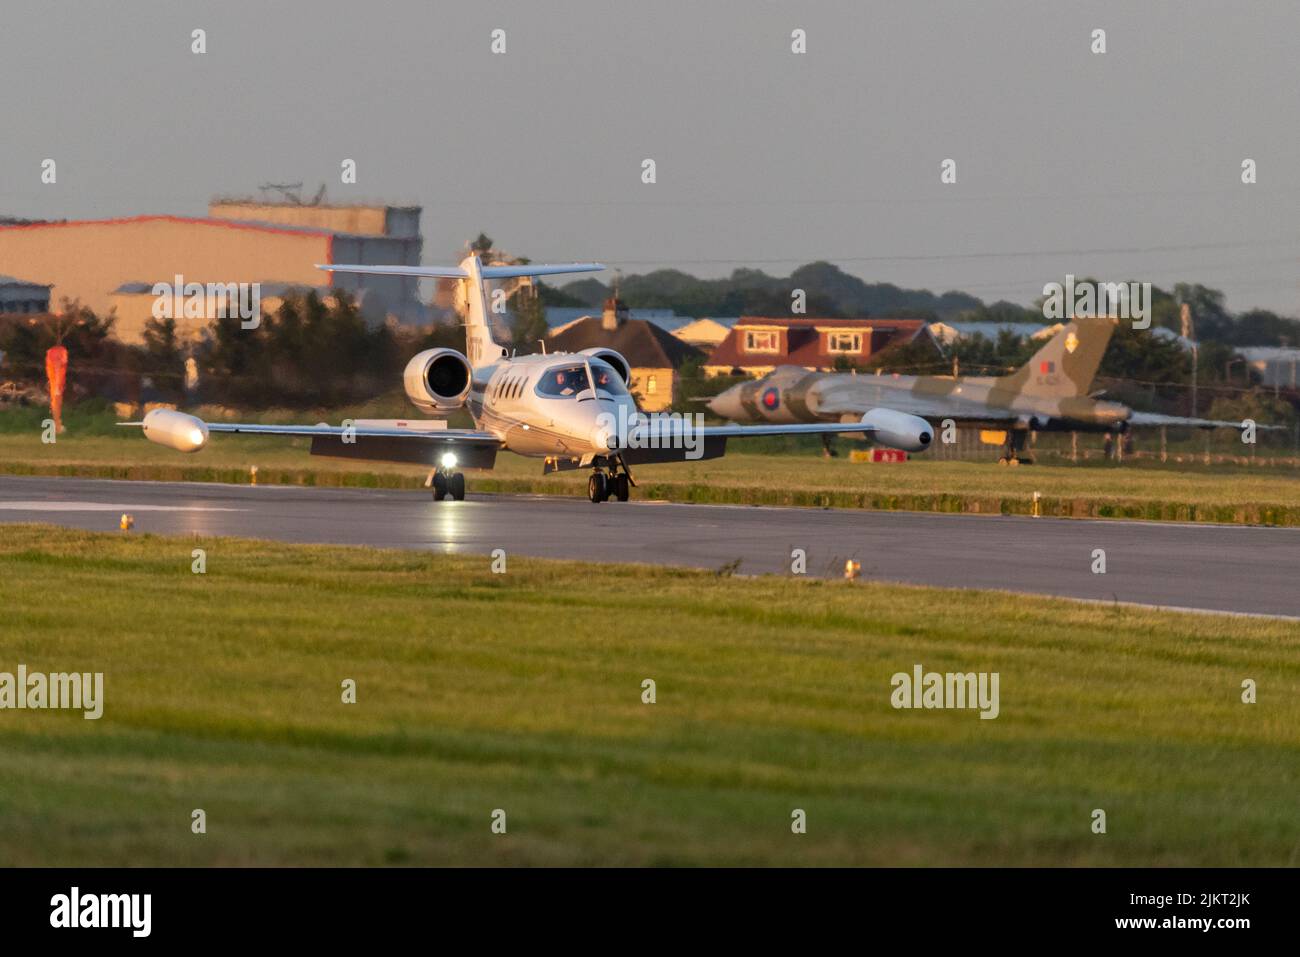 Gates Learjet 35A avion à réaction privé D-CFTG de Quick Air Jet Charter GmbH après l'atterrissage en soirée à l'aéroport de Londres Southend, Essex, Royaume-Uni. Lumière du coucher du soleil Banque D'Images